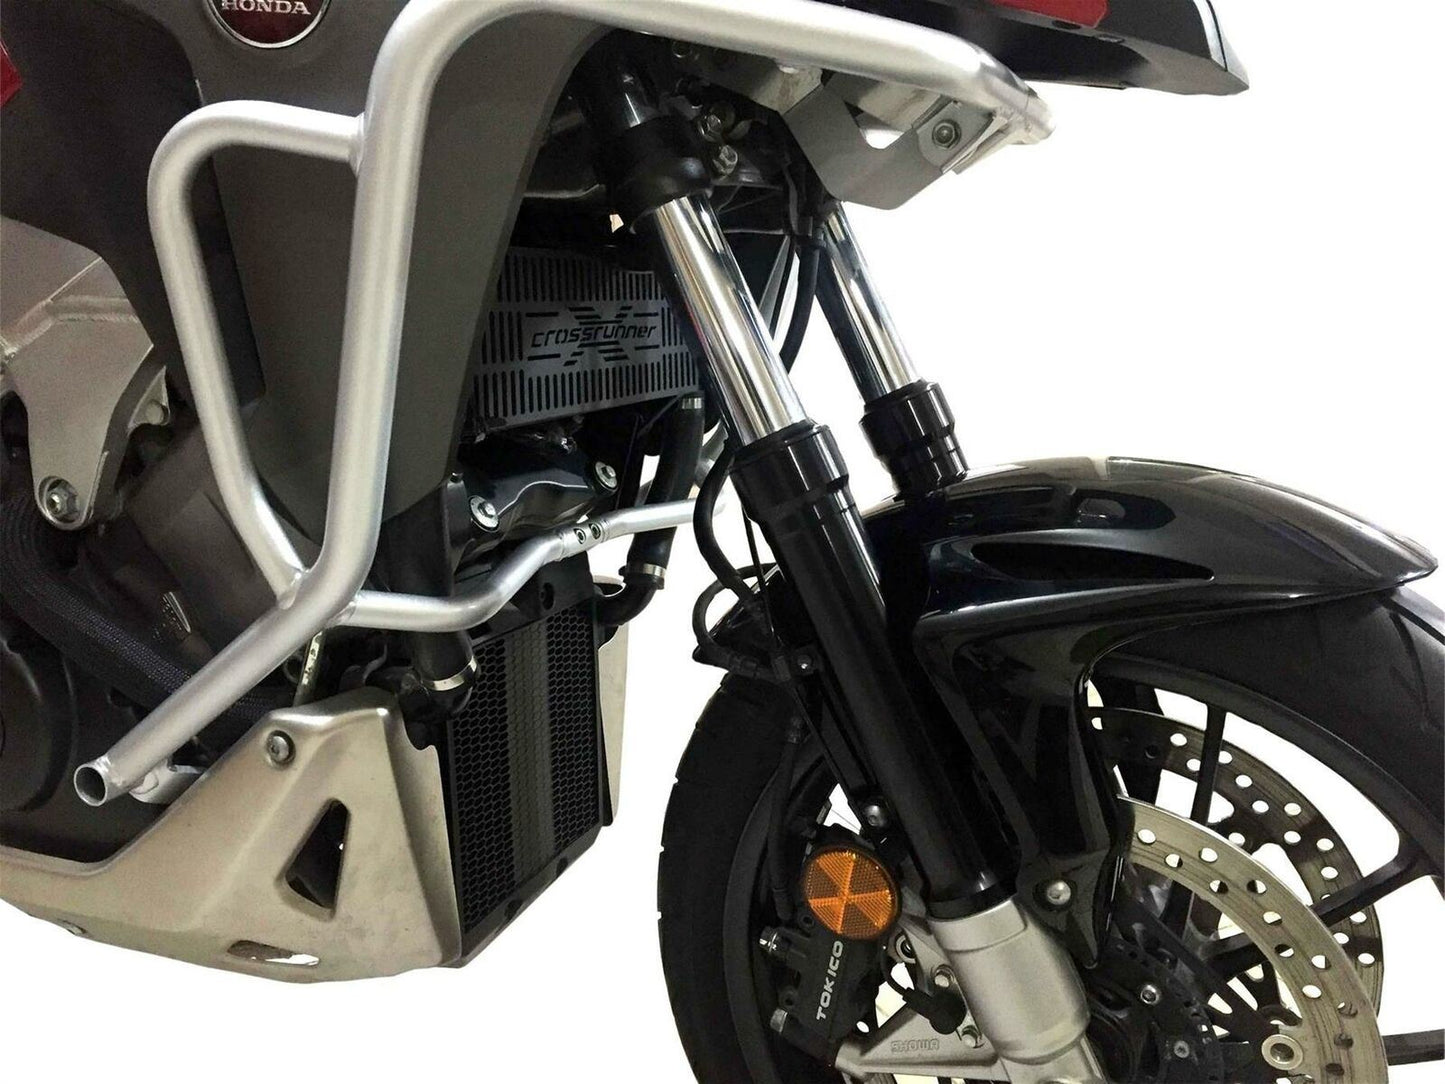 Honda VFR800 X Crossrunner radiator guard 2015-19 - Equipment4motorcycle